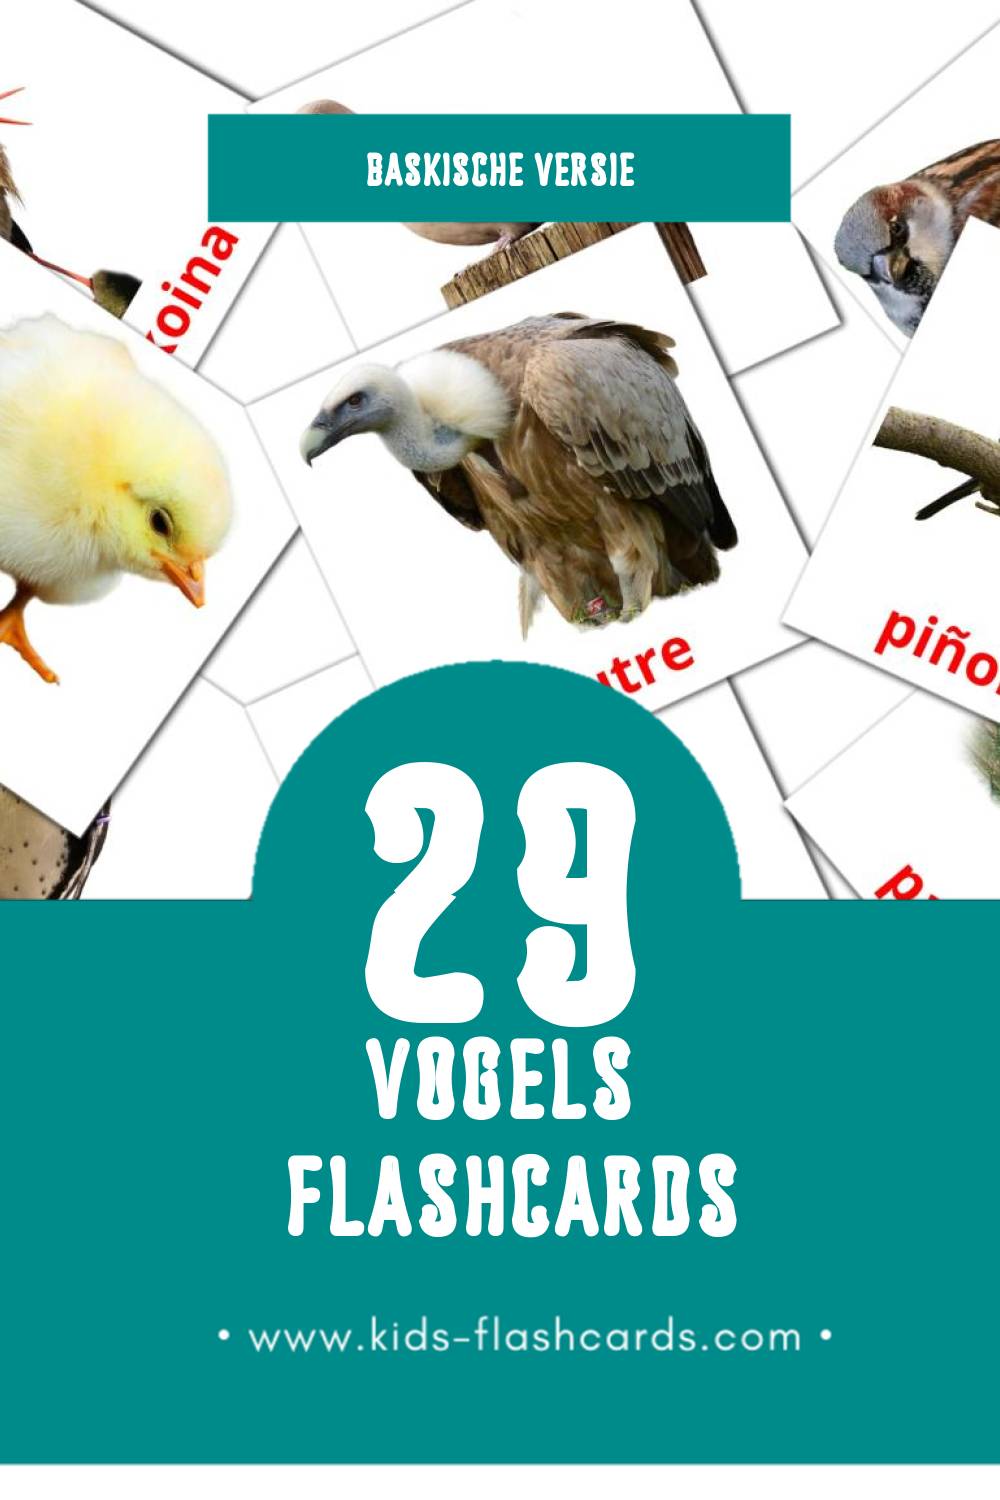 Visuele Hegaztiak Flashcards voor Kleuters (29 kaarten in het Baskisch)